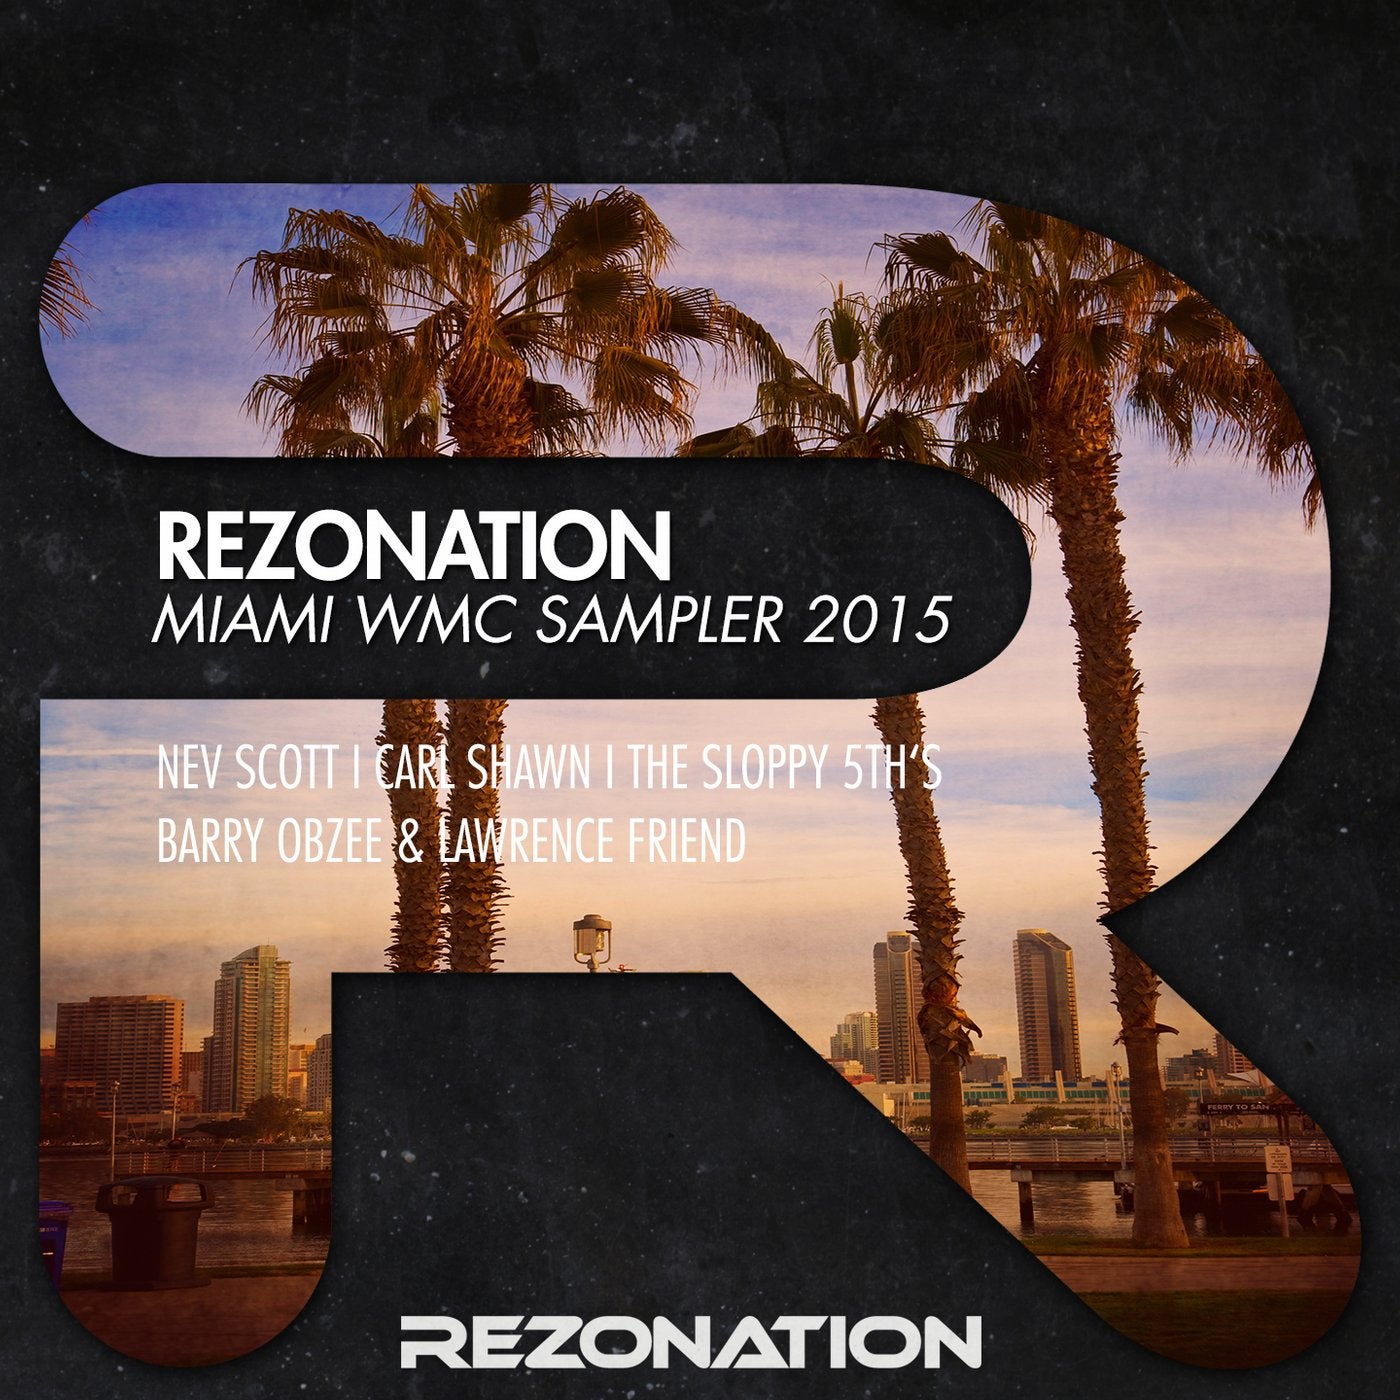 Rezonation Miami WMC Sampler 2015